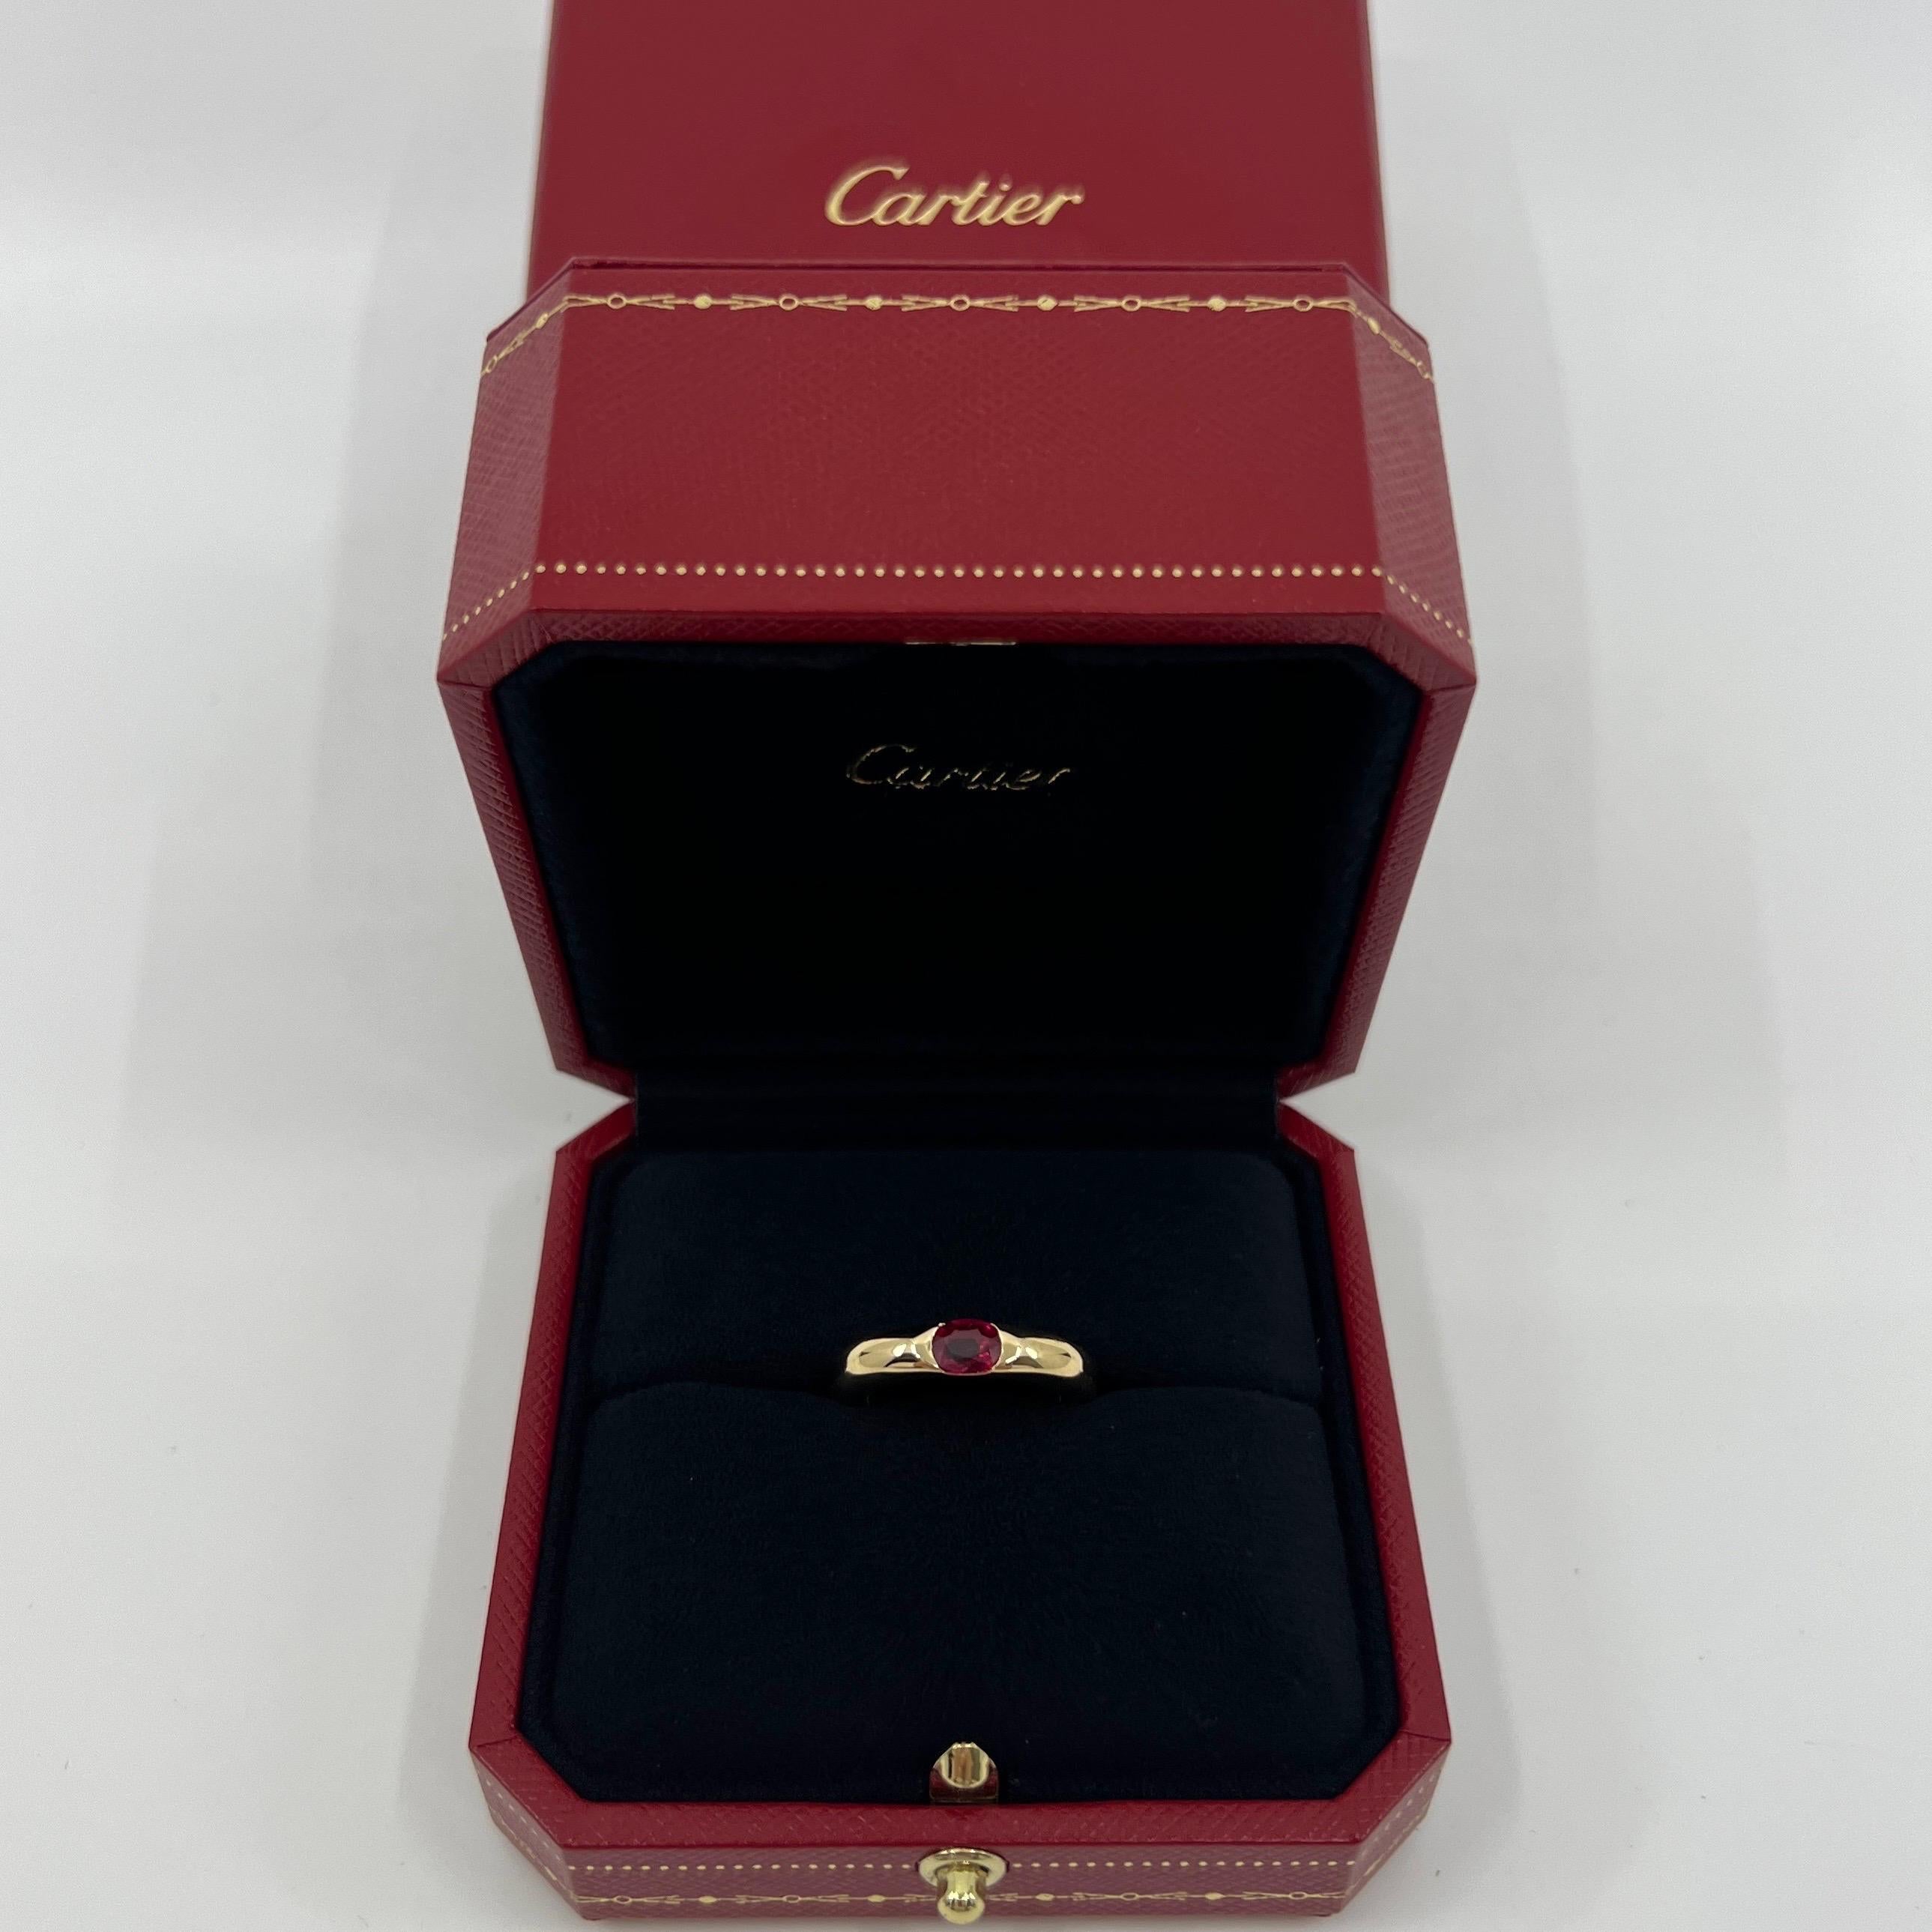 Vintage Cartier Deep Red Ruby 18k Gelbgold Solitaire Band Ring.

Atemberaubender Ring aus Gelbgold, besetzt mit einem leuchtend rosaroten Rubin. Edle Schmuckhäuser wie Cartier verwenden nur die feinsten Edelsteine, und dieser Rubin ist keine